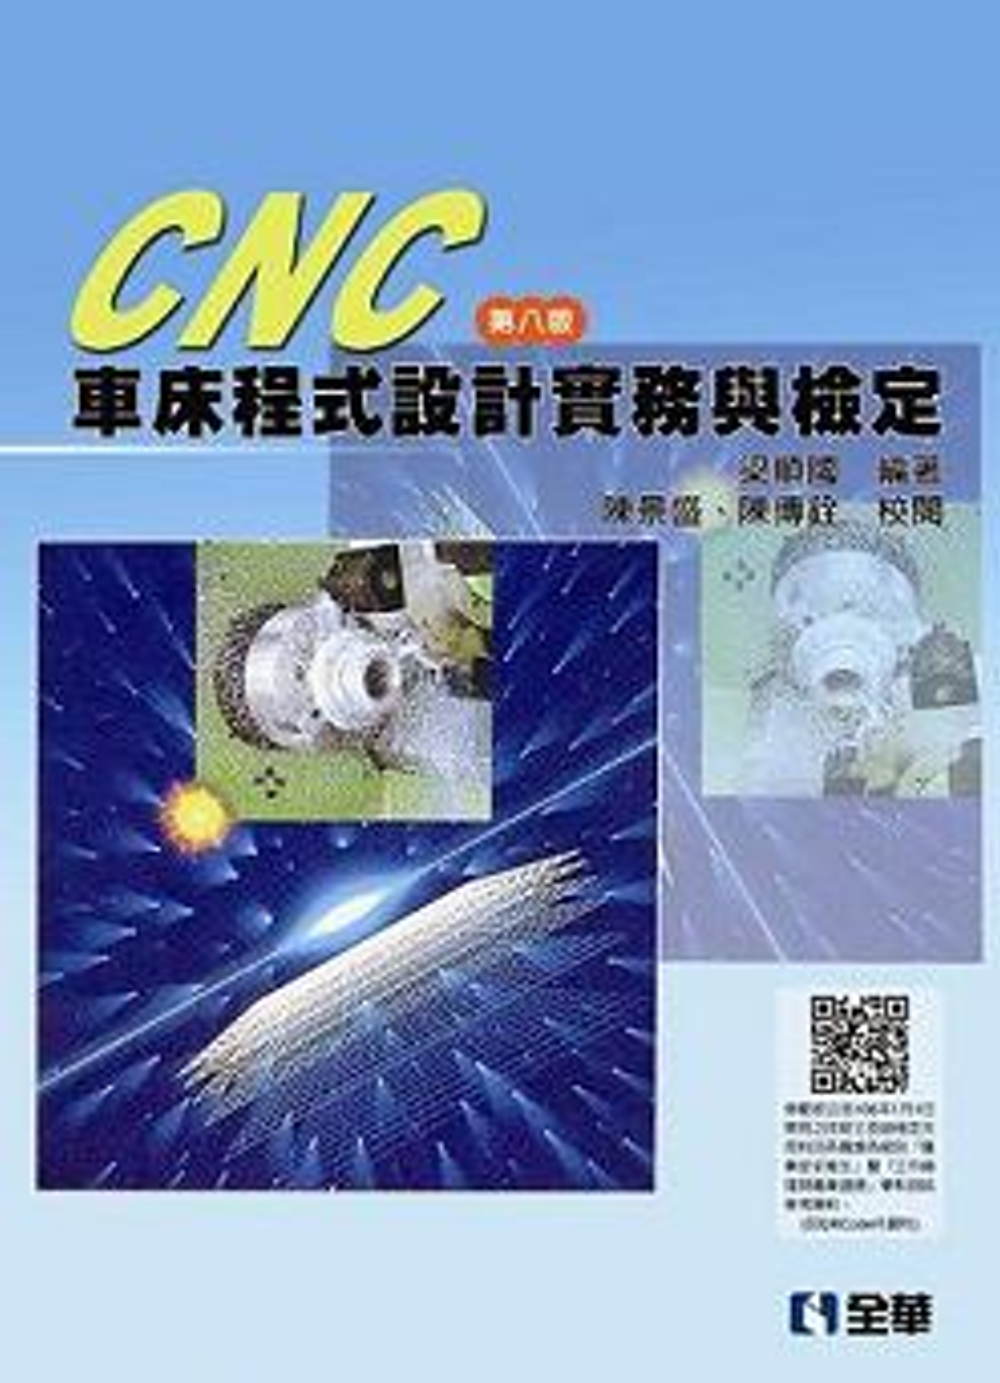 CNC車床程式設計實務與檢定(第八版)